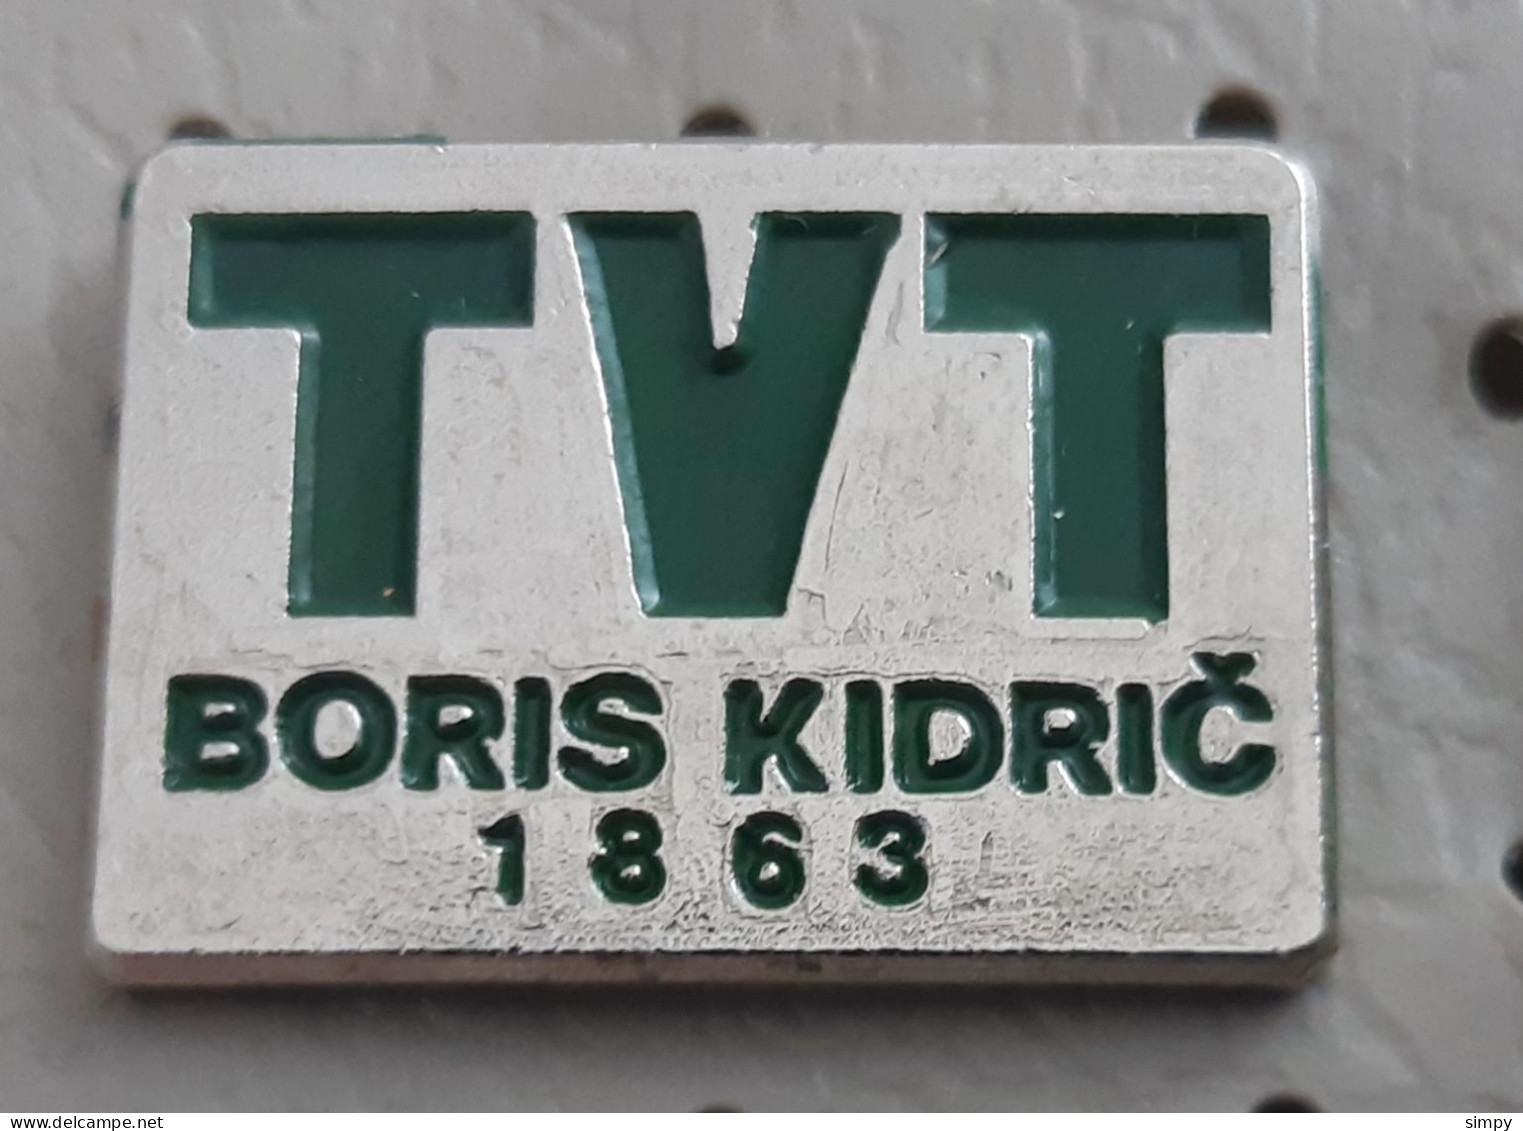 TVT Boris Kidric Maribor 1863 Locomotive Train Industry Slovenia Ex Yugoslavia Pin - Transports